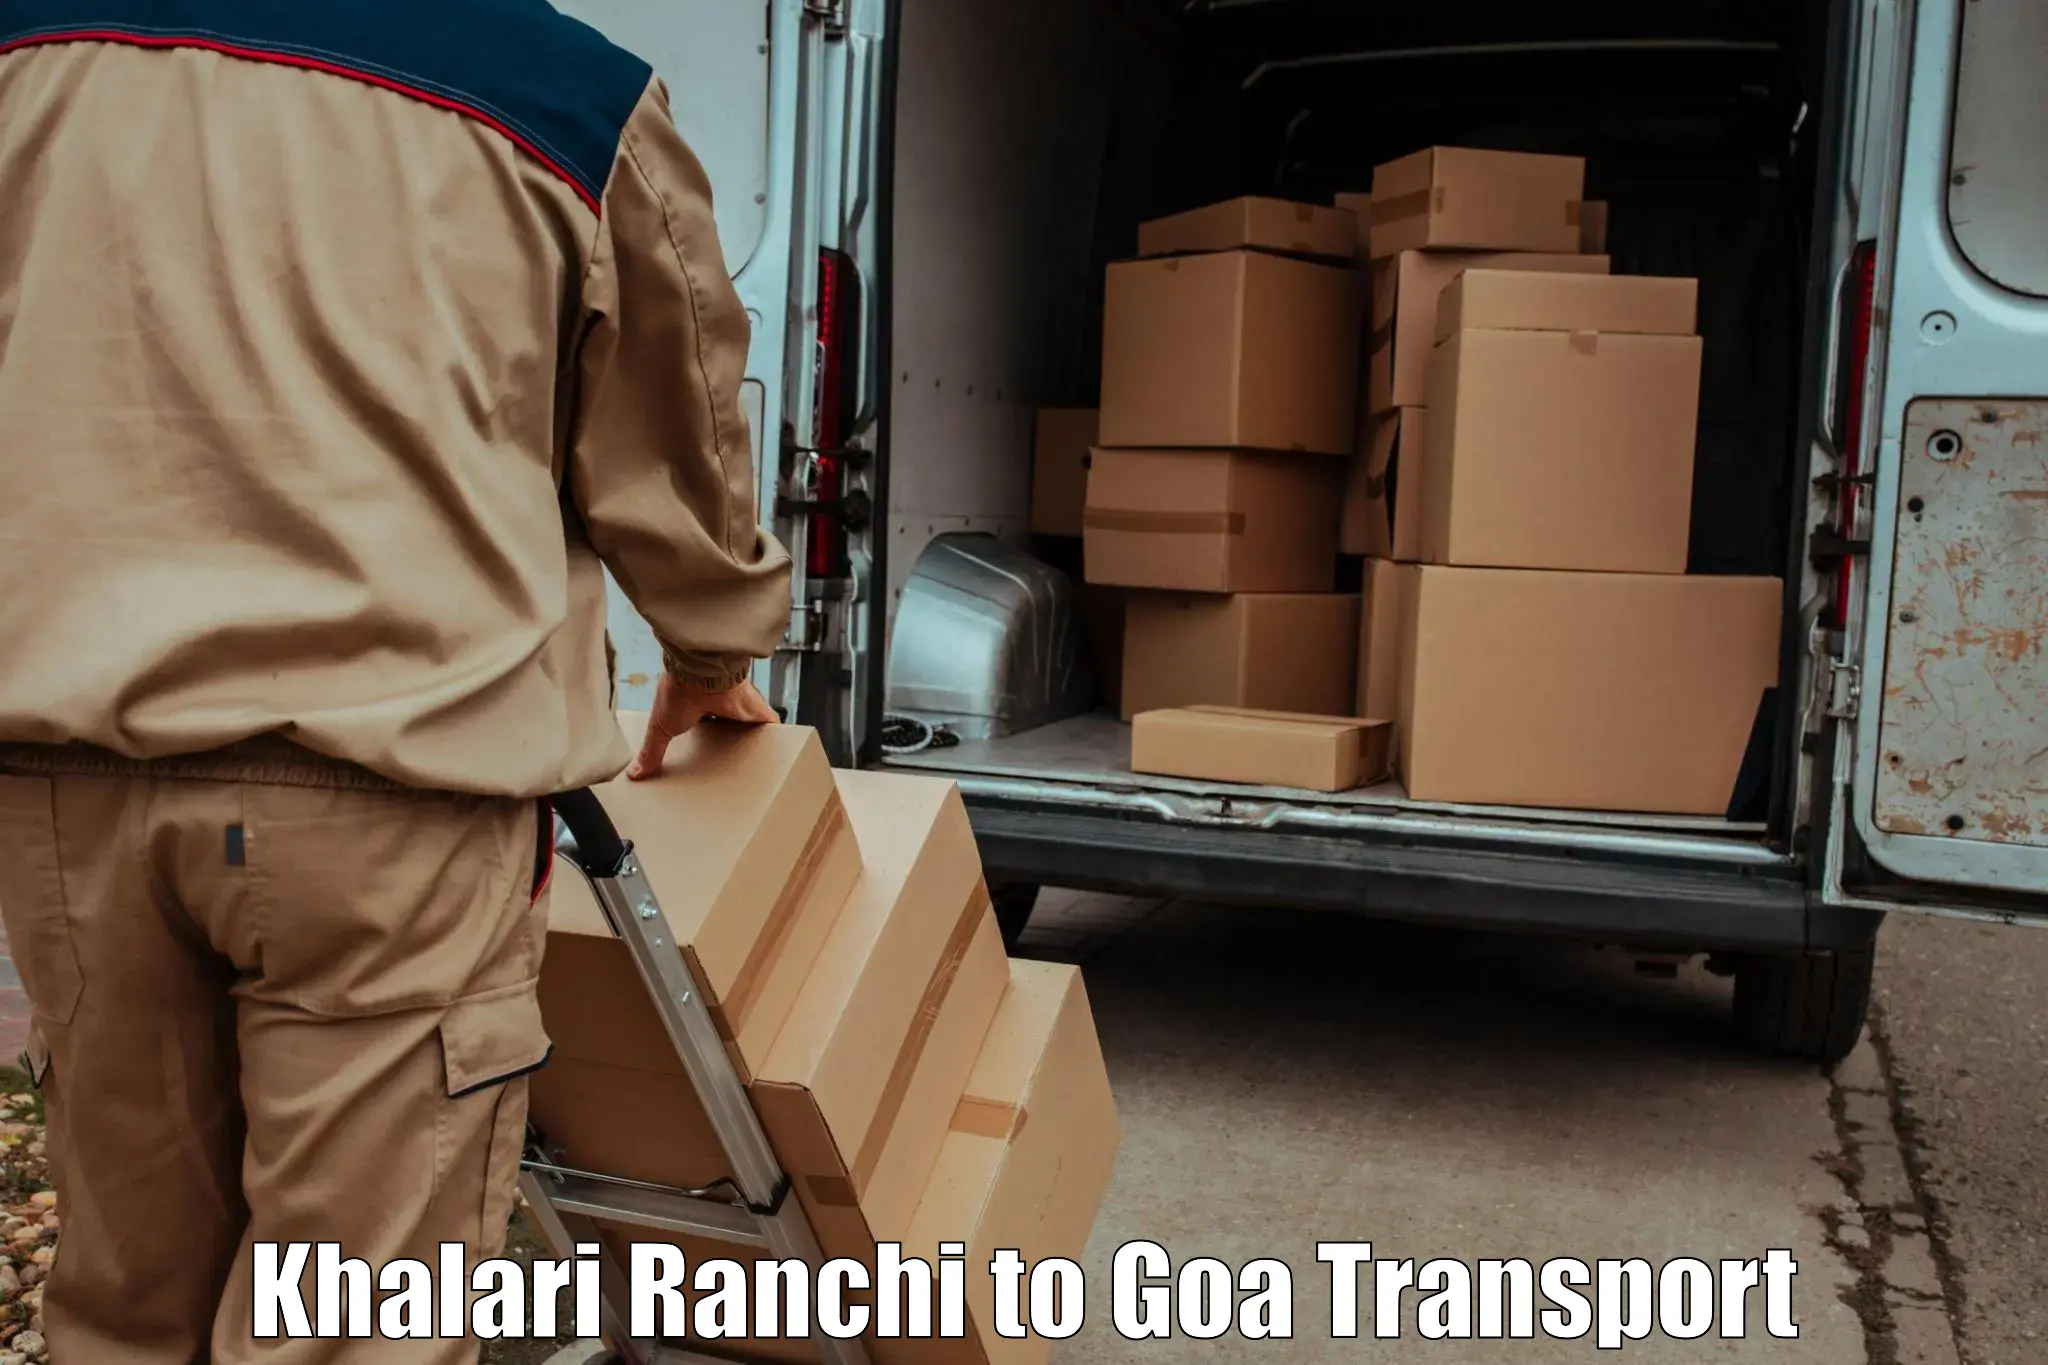 Truck transport companies in India Khalari Ranchi to Panaji